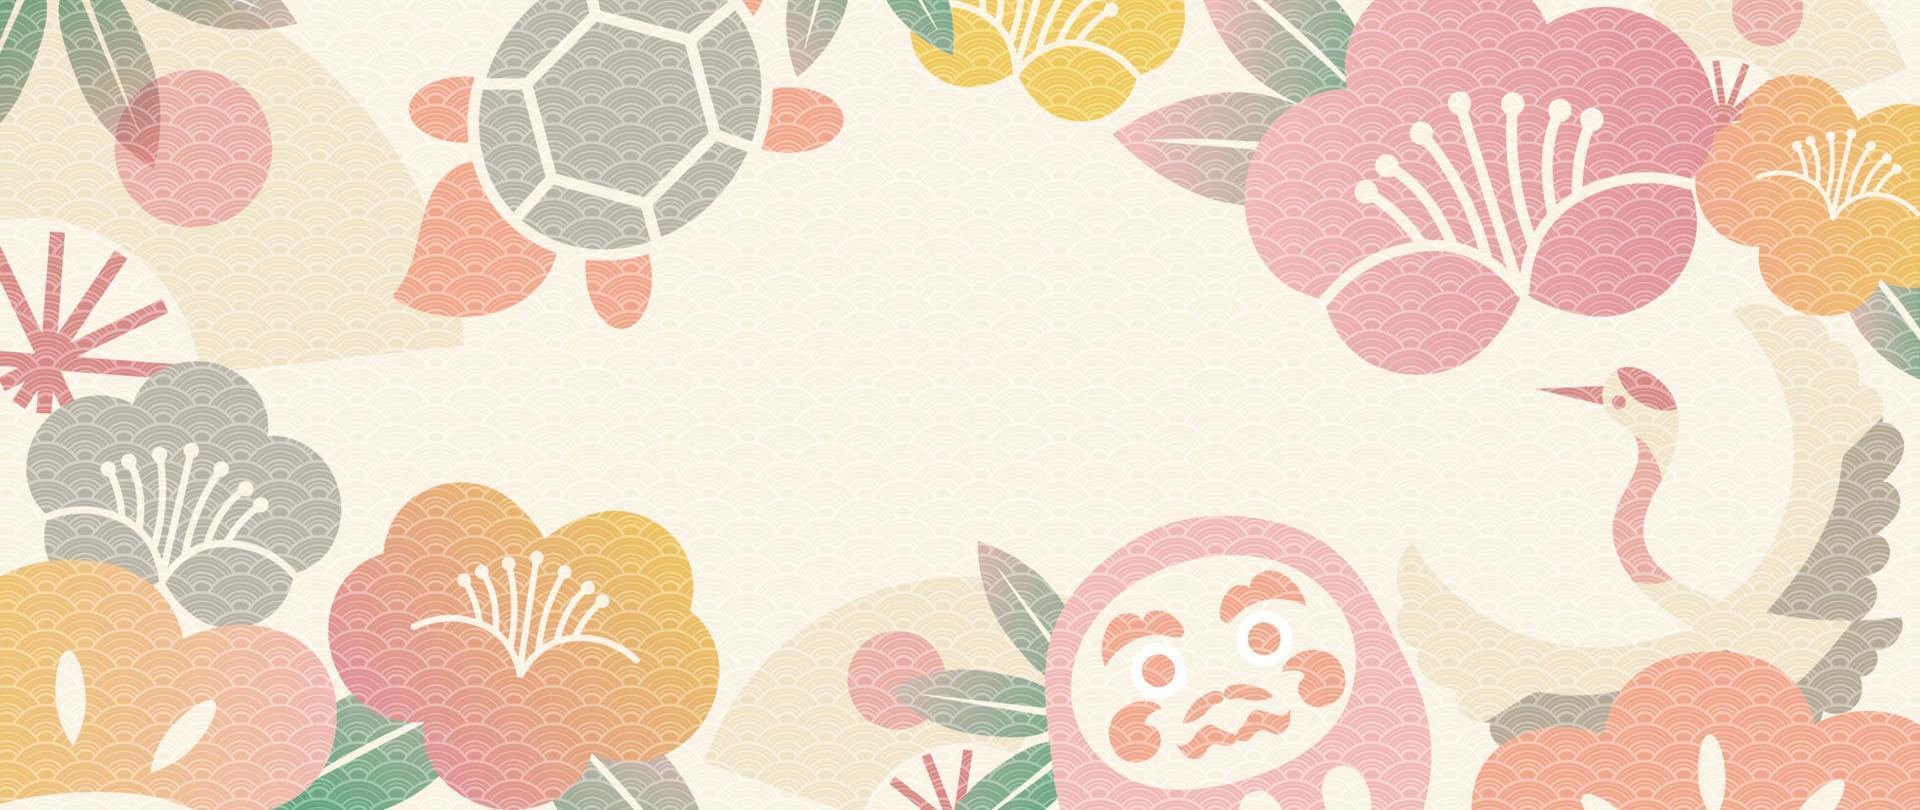 ilustração em vetor de fundo japonês. feliz ano novo modelo de decoração estilo pastel japonês padrão com boneca daruma, forma de flor, pássaro guindaste, ventilador. design para cartão, papel de parede, pôster, banner.